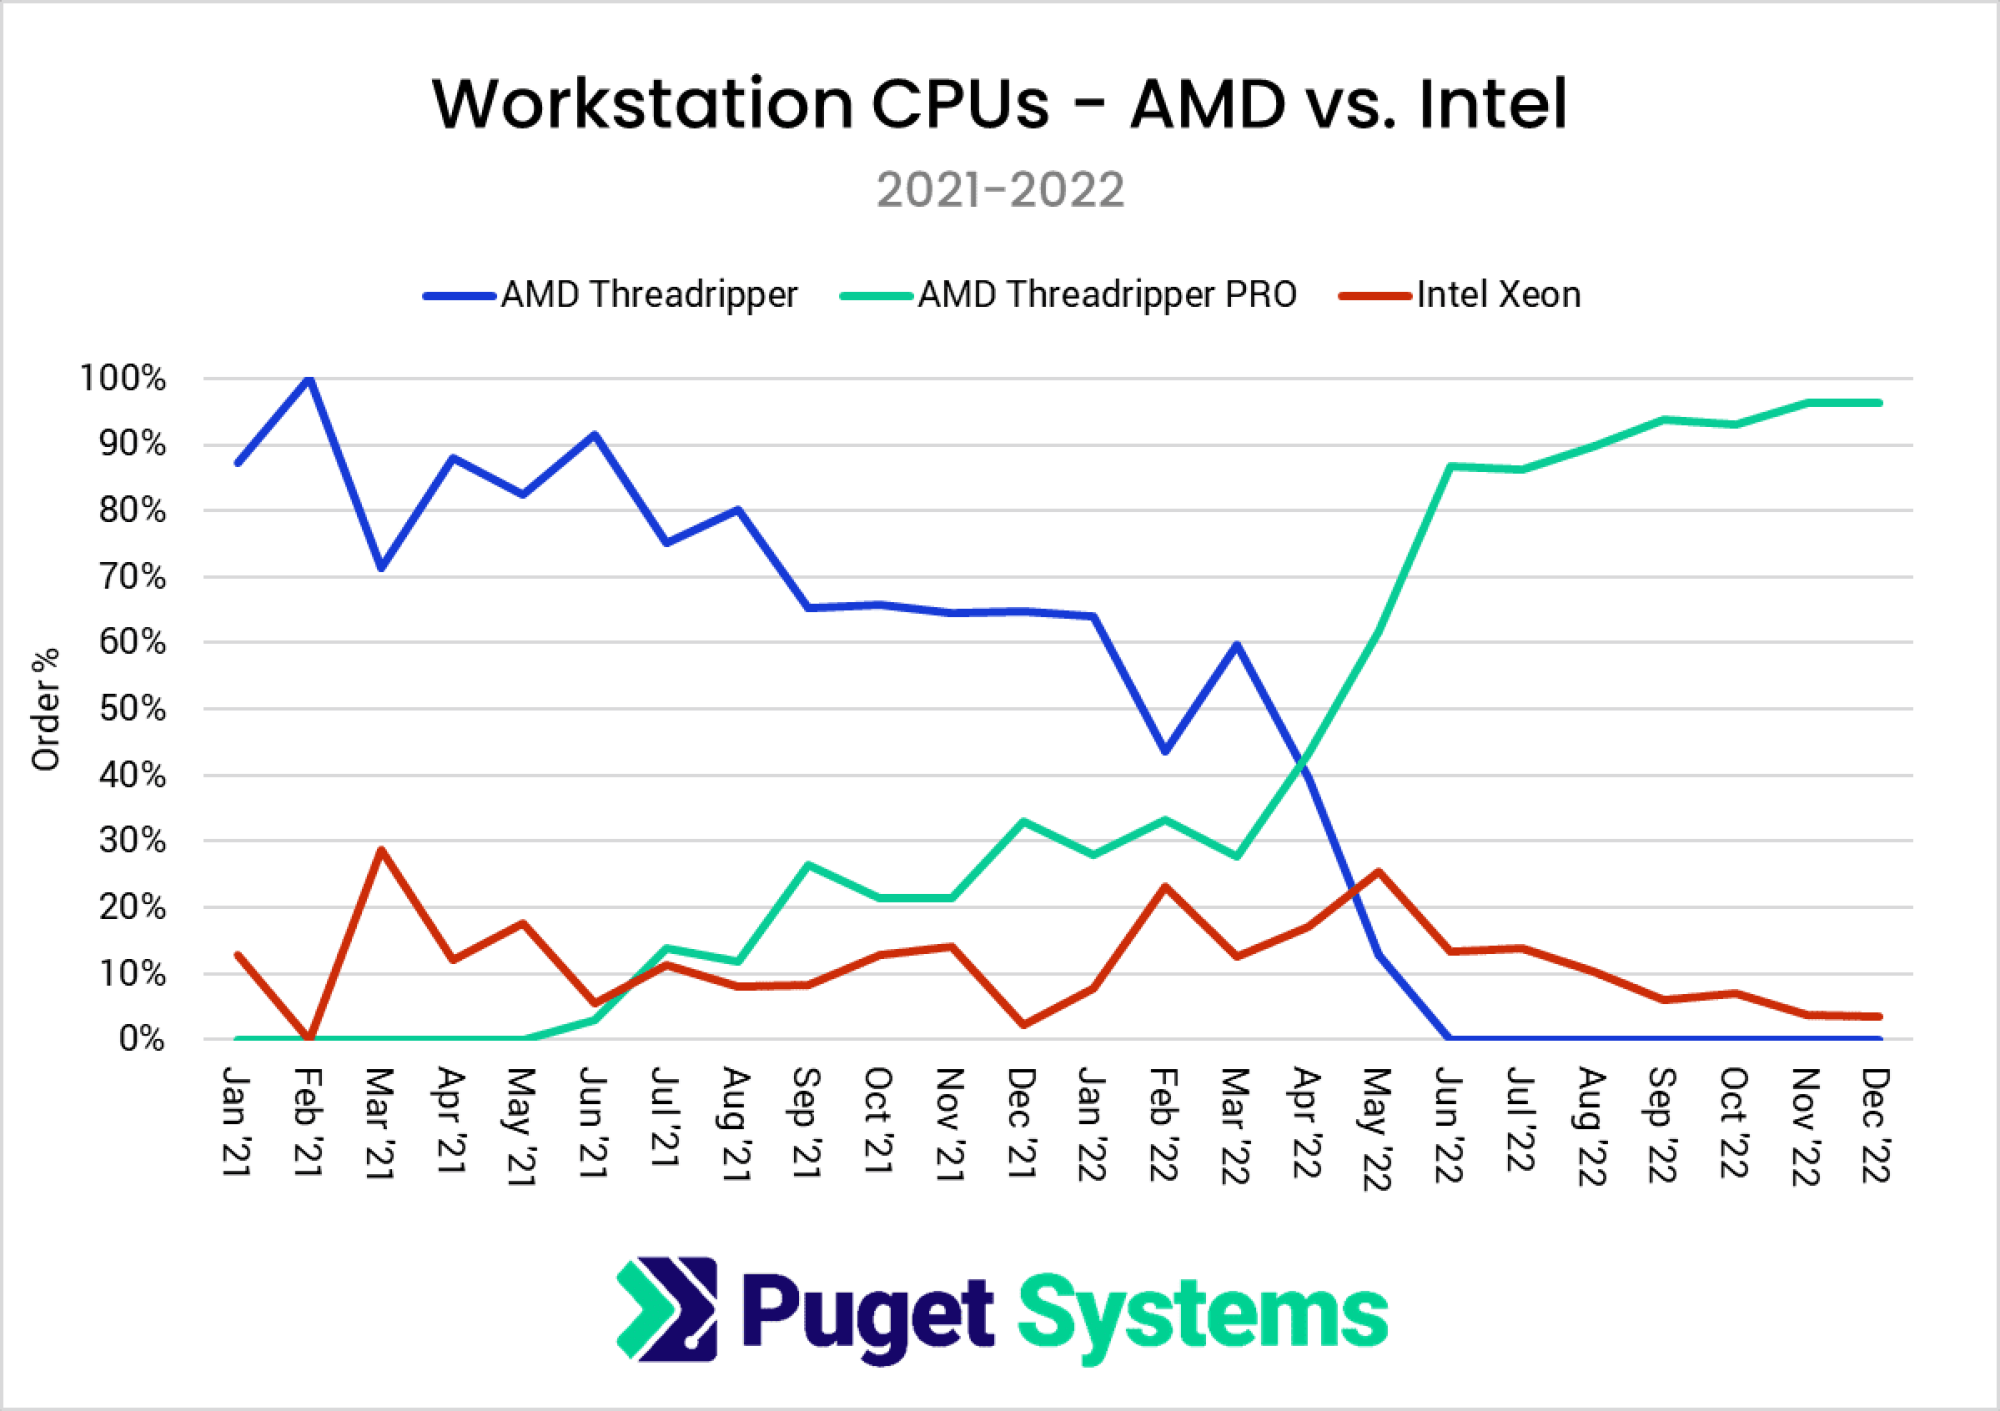 Workstation CPU sales